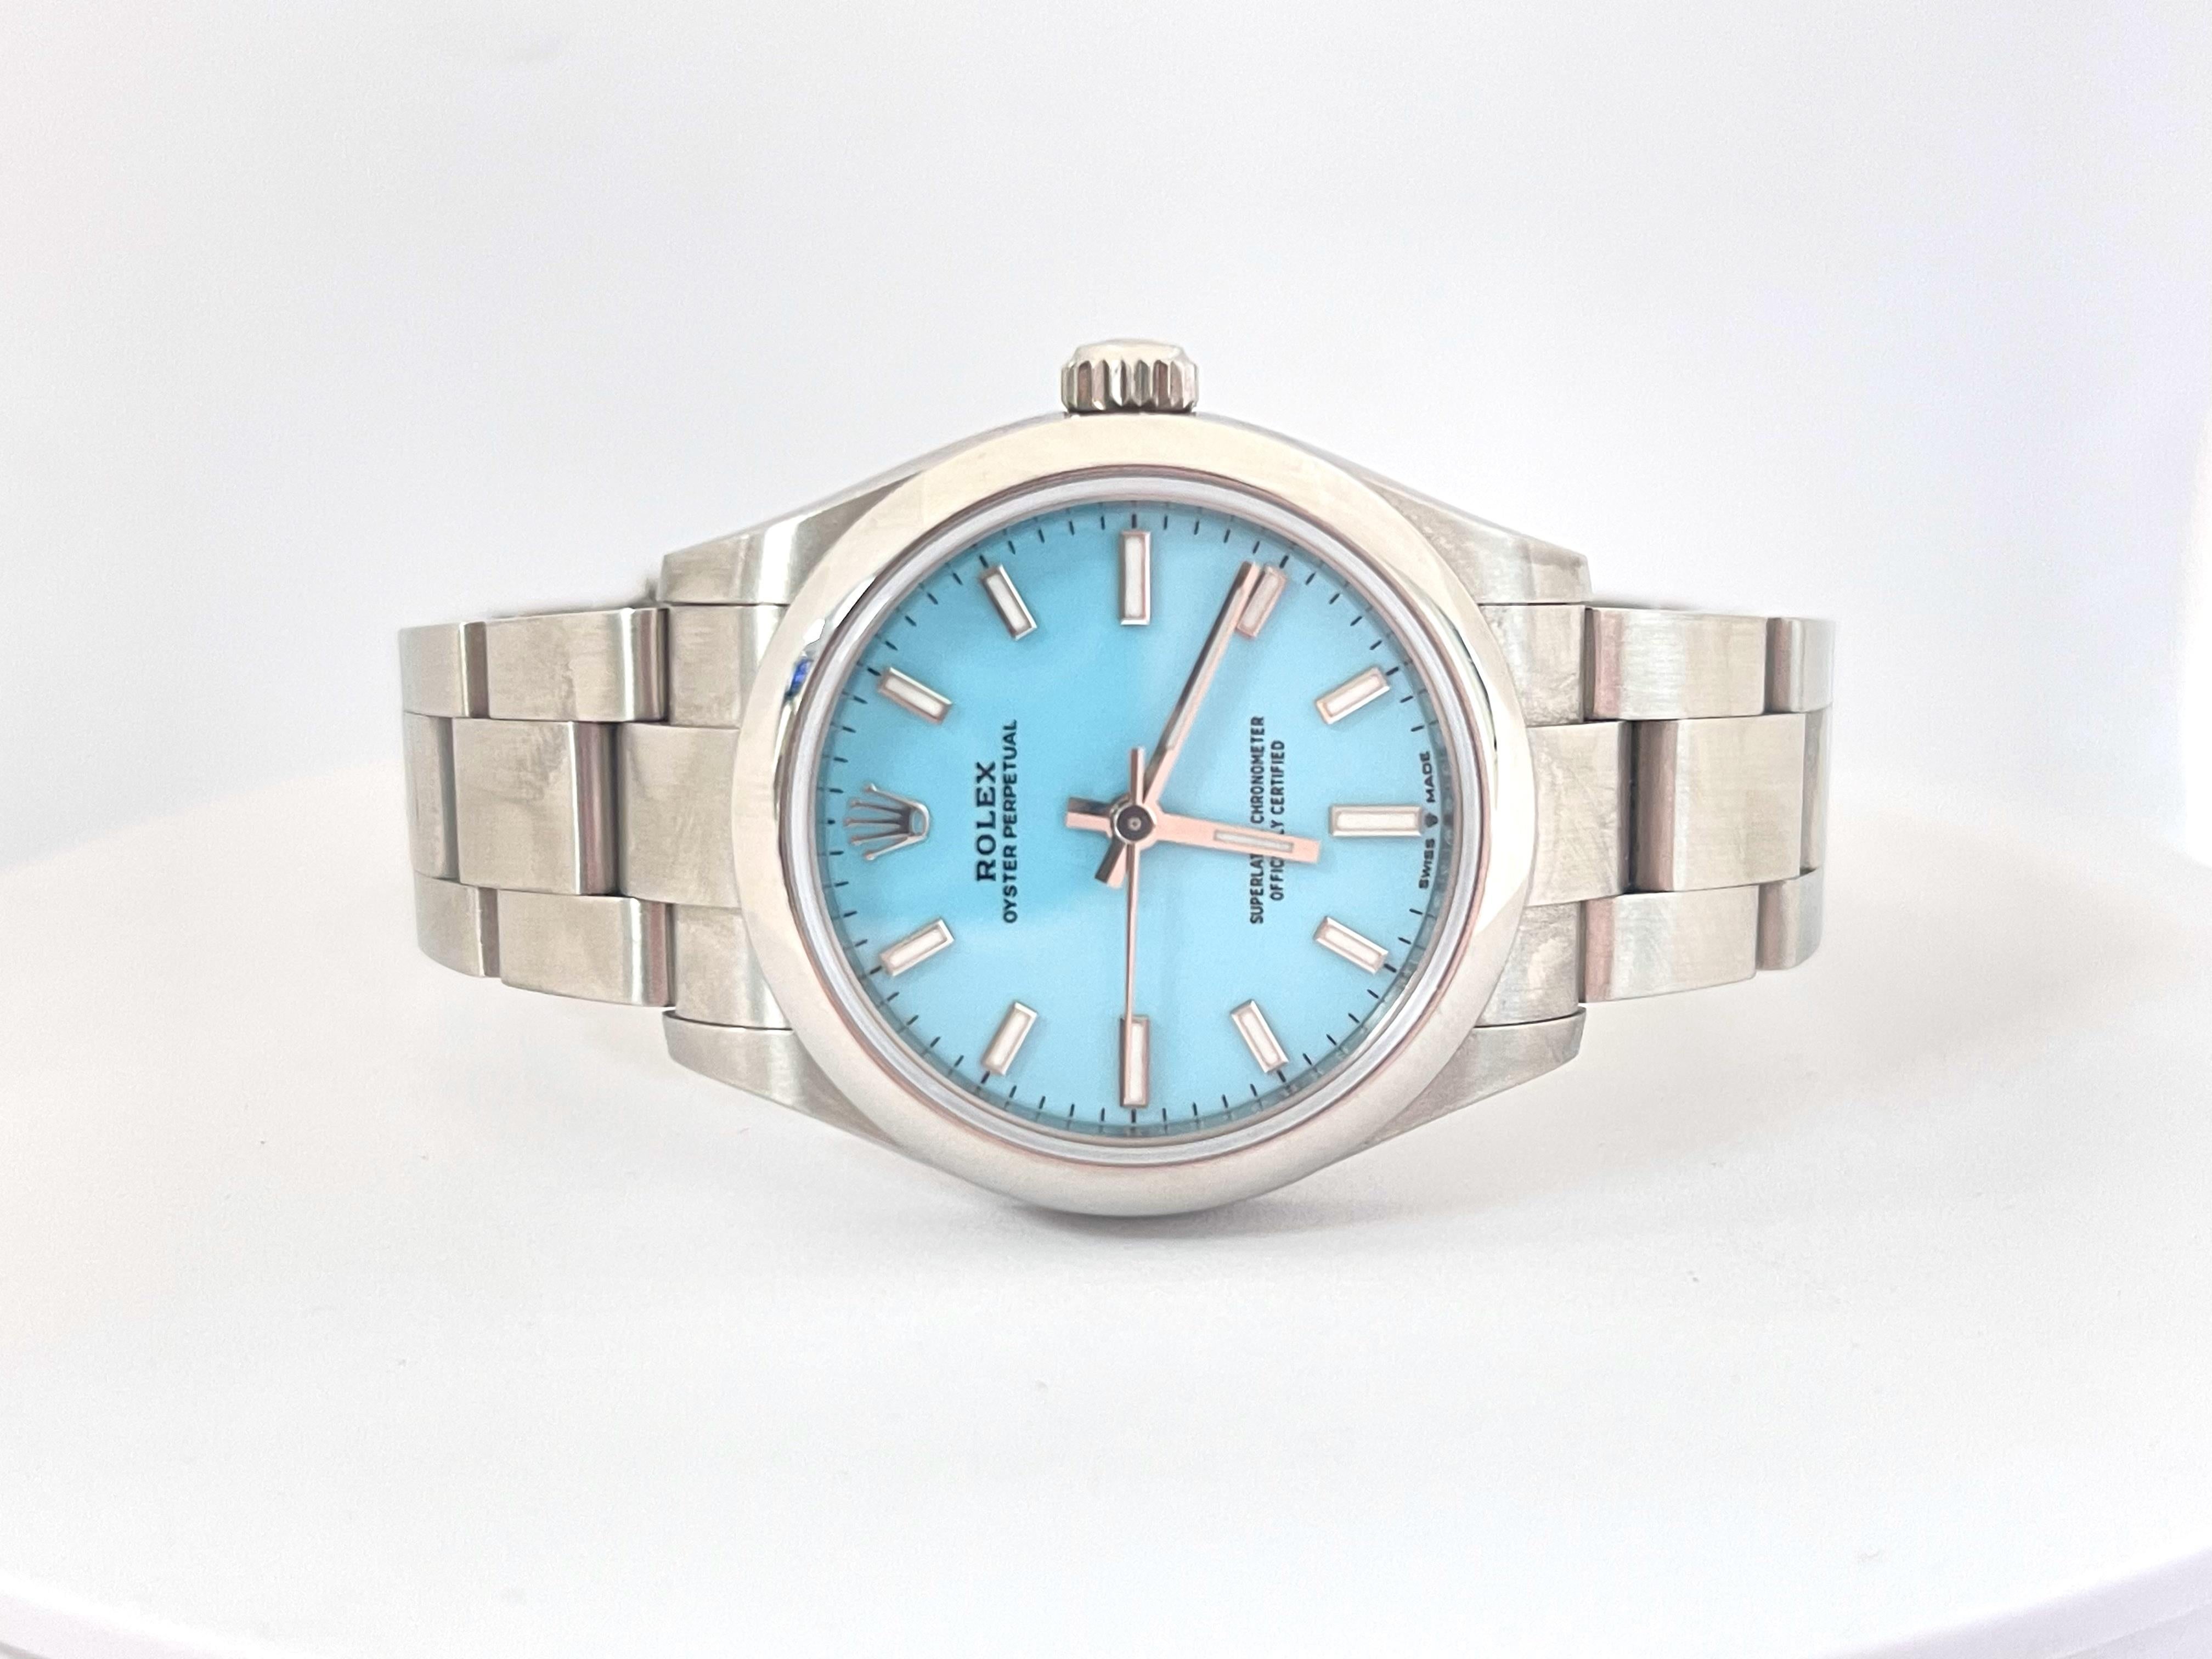 Rolex Oyster Perpetual 31mm Türkis Blau Zifferblatt Stahl Uhr 277200. Diese Uhr ist eine der begehrtesten Farben in dieser Kategorie. Brandneu und unbenutzt mit einem weißen Etikett. 

*Kostenloser Versand innerhalb der U.S.*